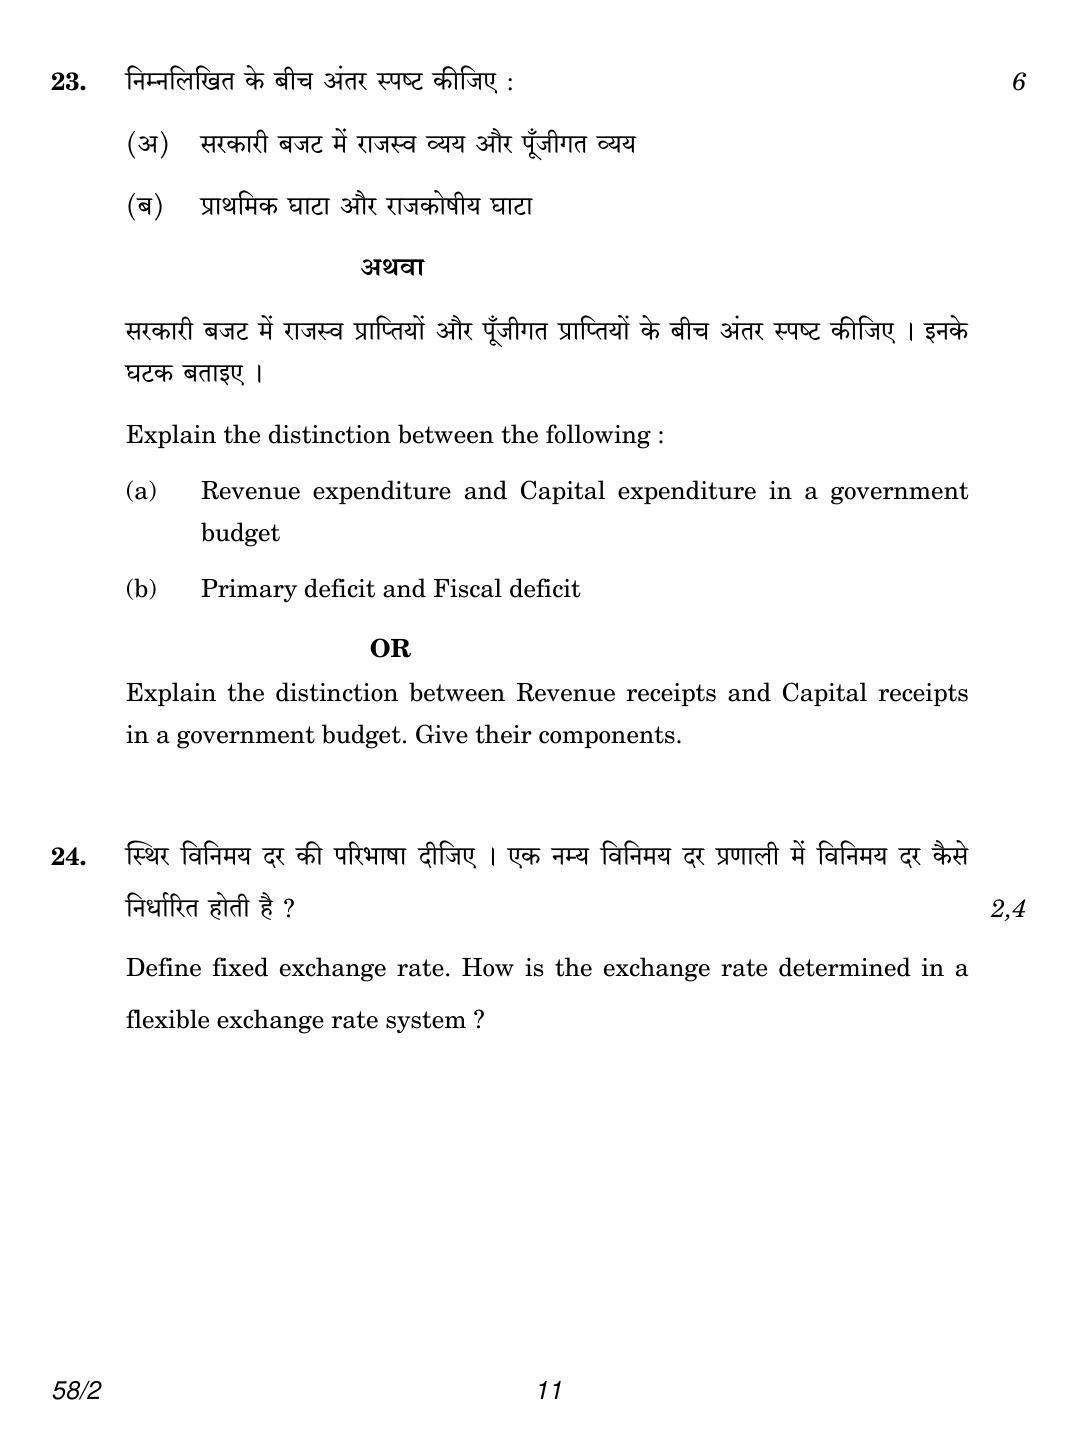 CBSE Class 12 58-2 Economics 2018 Question Paper - Page 11